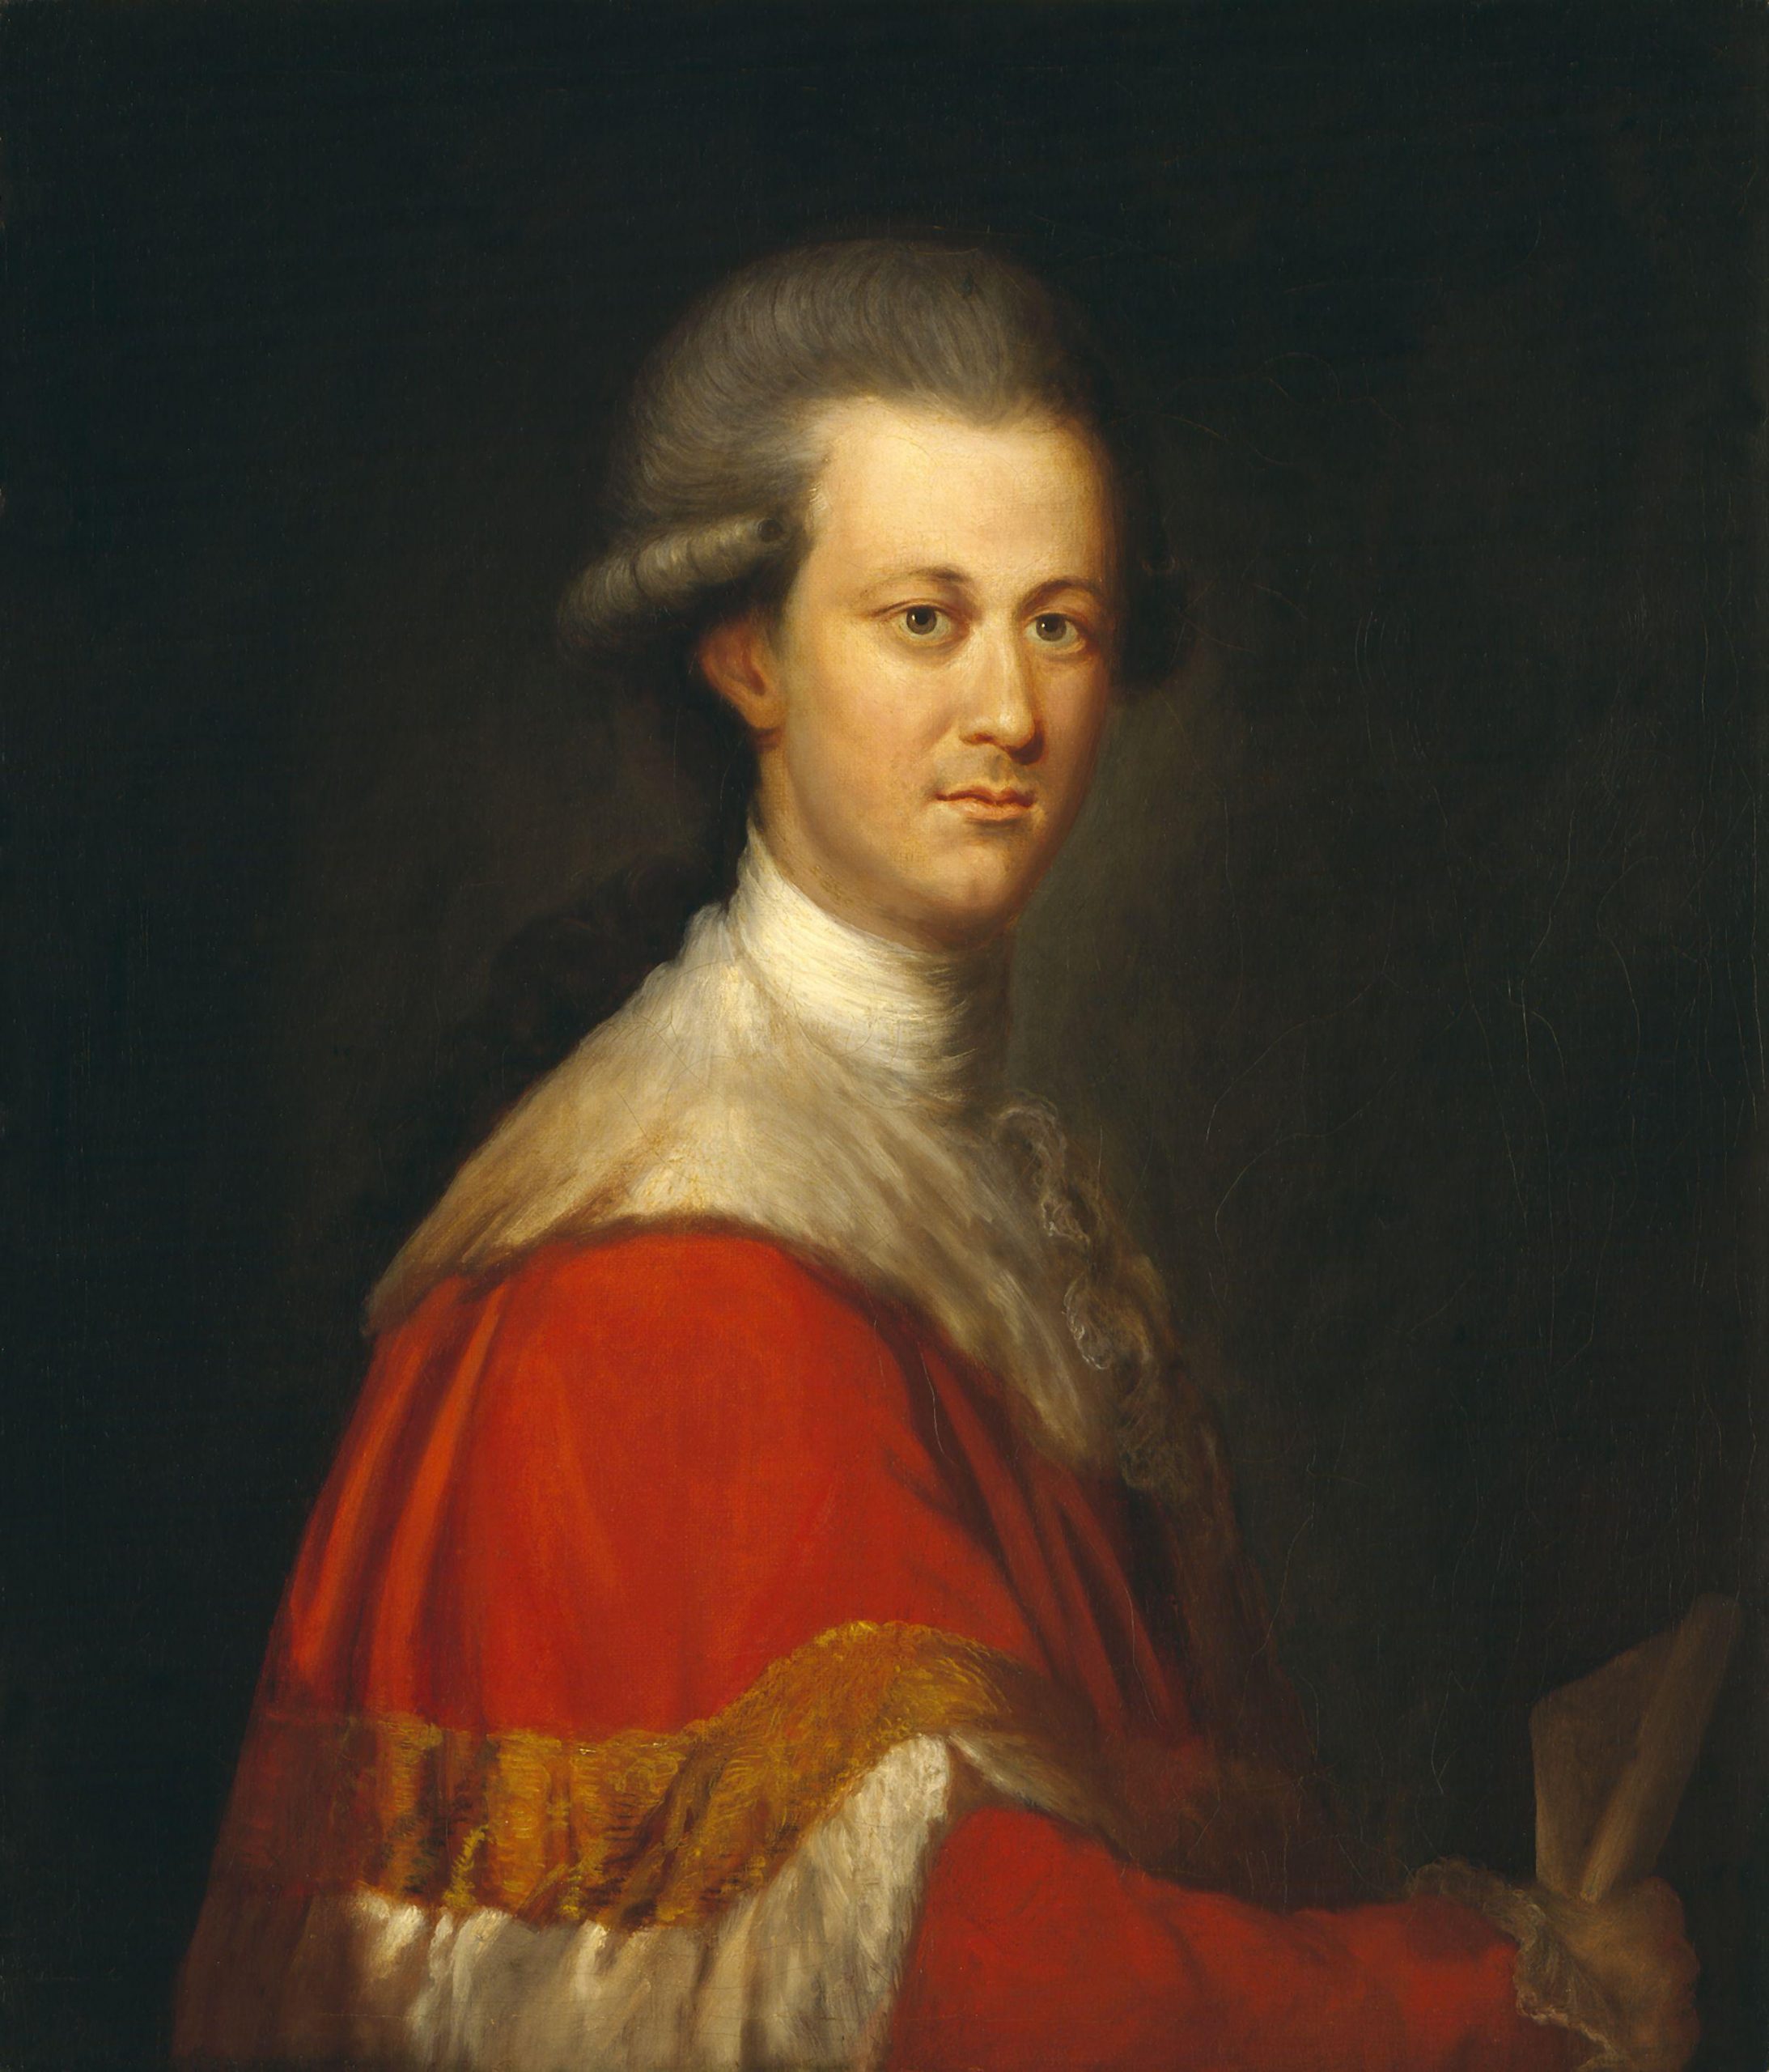 Thomas Lyttelton, 2nd Baron Lyttelton by Richard Brompton.